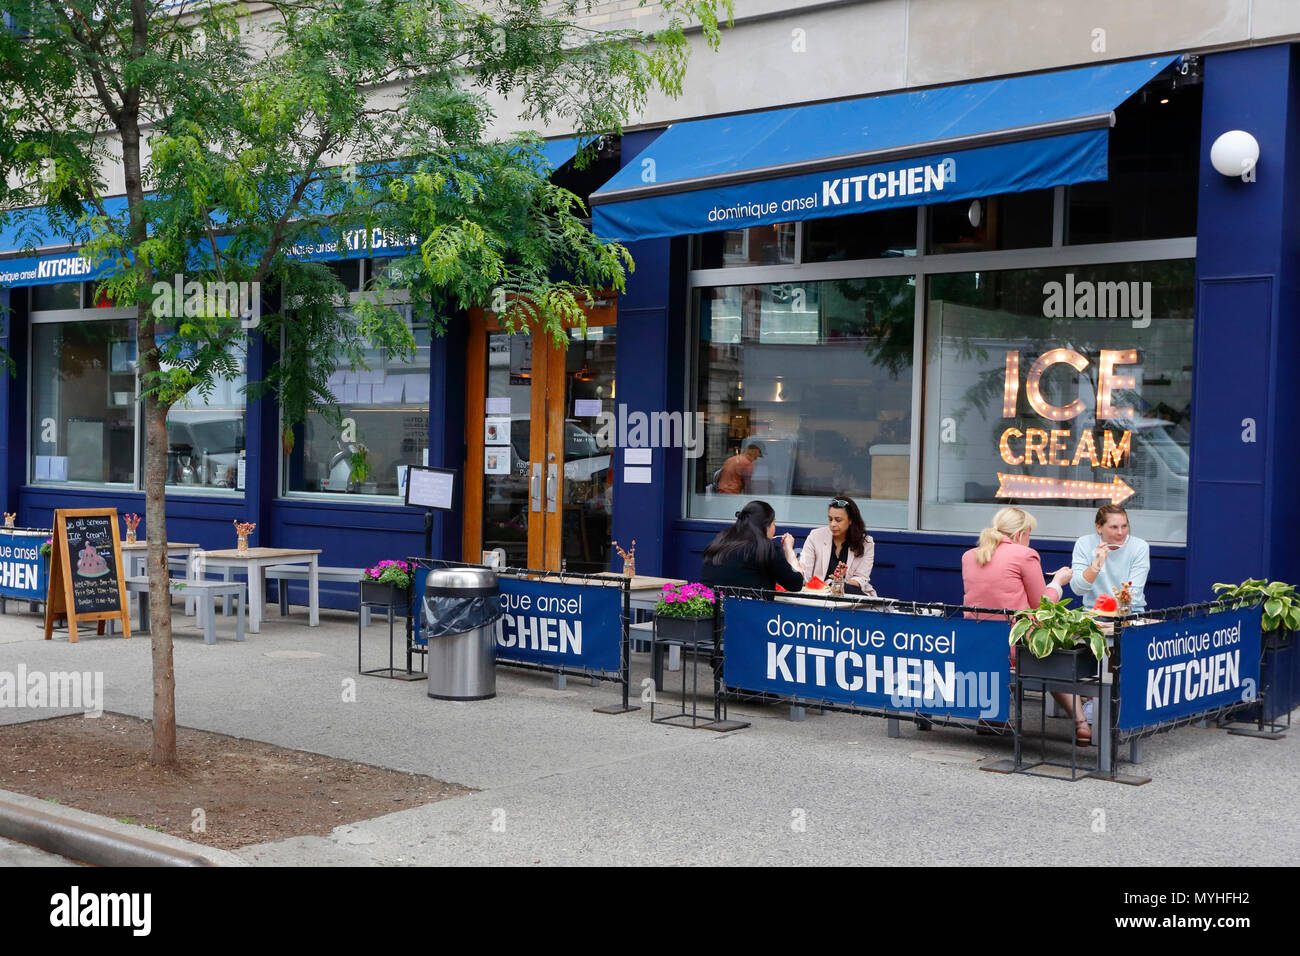 [Historisches Schaufenster] Dominique Ansel Kitchen, 137 7th Ave S, New York, NY. Außenfassade einer französischen Bäckerei in Manhattans Greenwich Village. Stockfoto